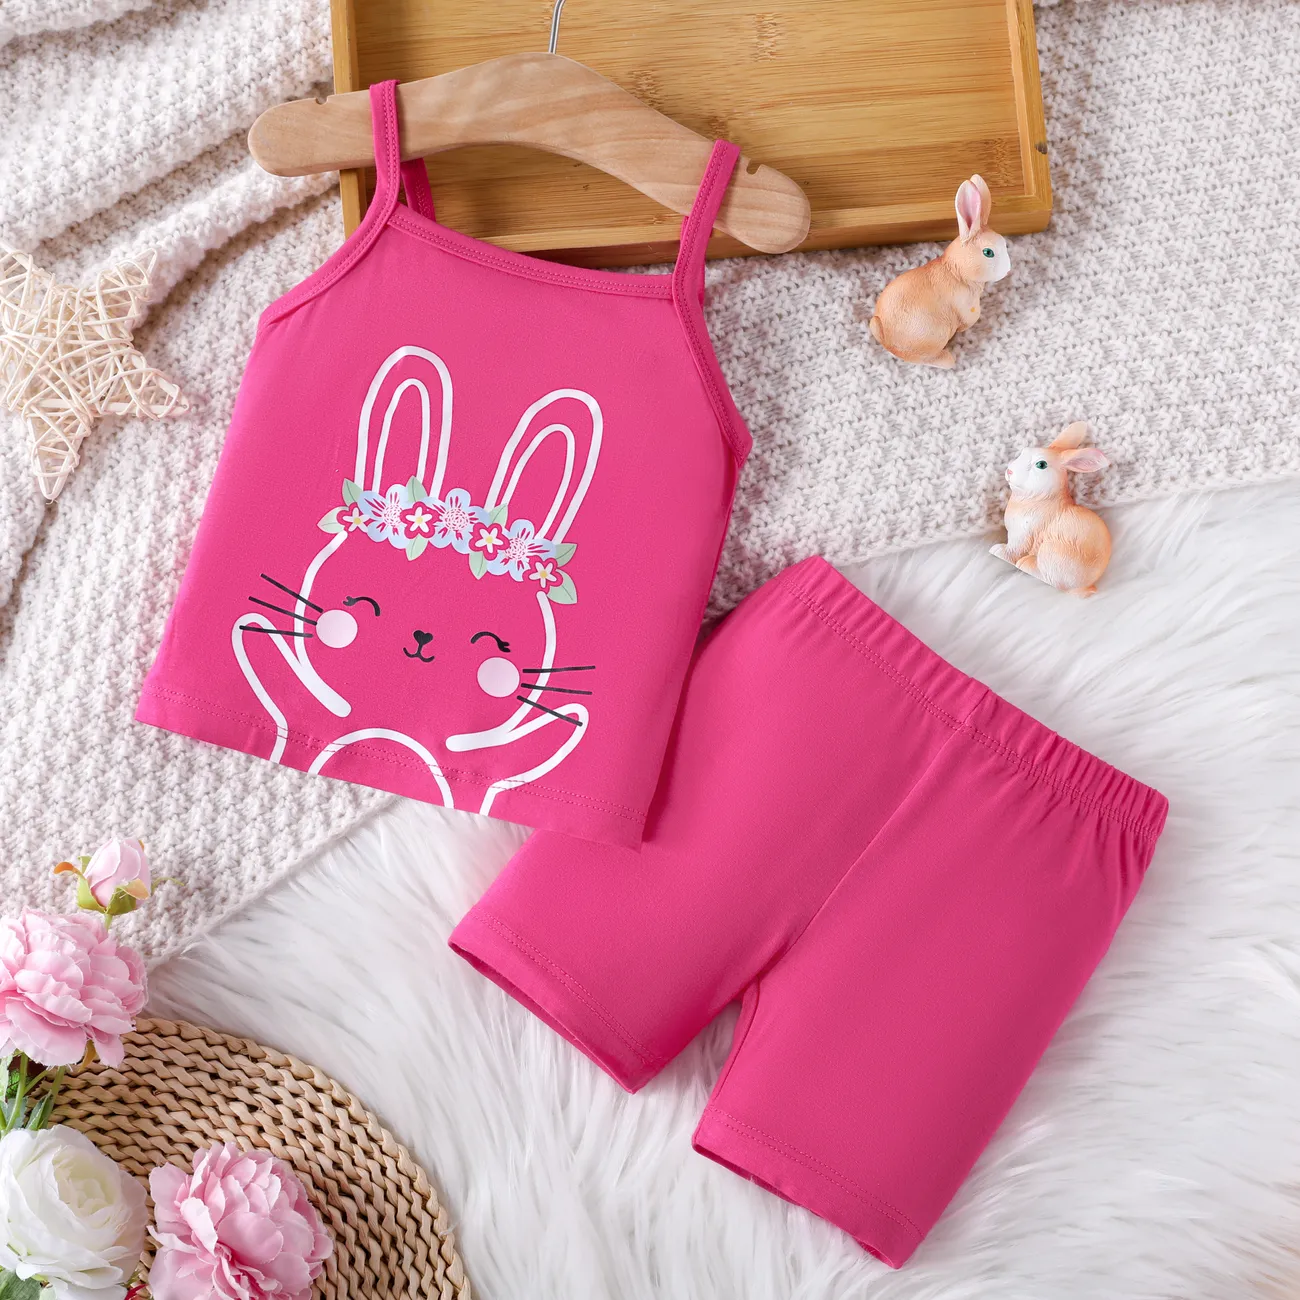 Bébé/enfant en bas âge fille 2pcs bambou fibre lapin imprimé camisole et shorts pyjama ensemble roseo big image 1